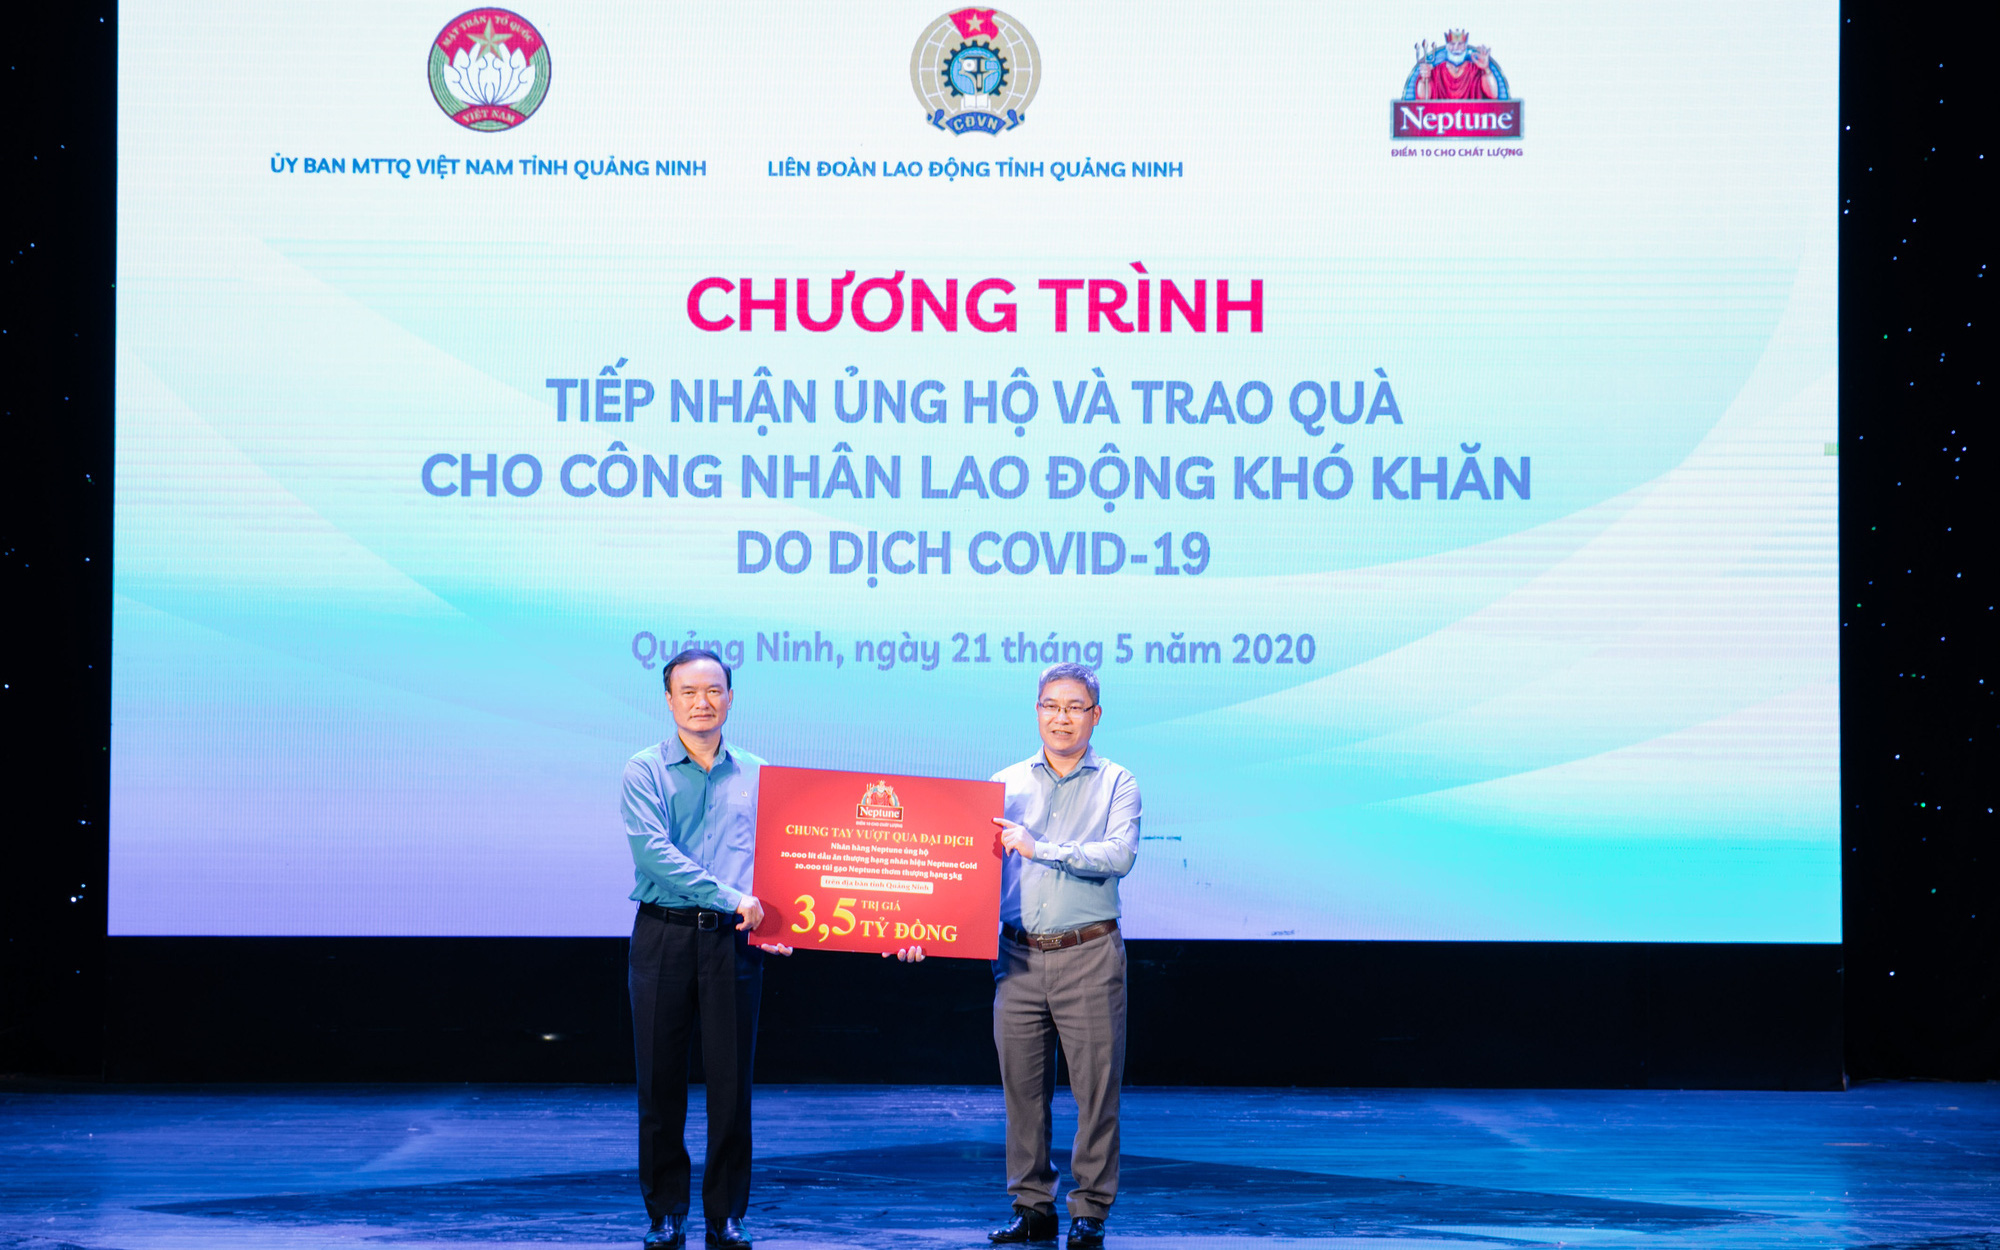 Neptune hỗ trợ hiện vật trị giá 3,5 tỷ đồng cho lao động tỉnh Quảng Ninh mất việc trong COVID-19